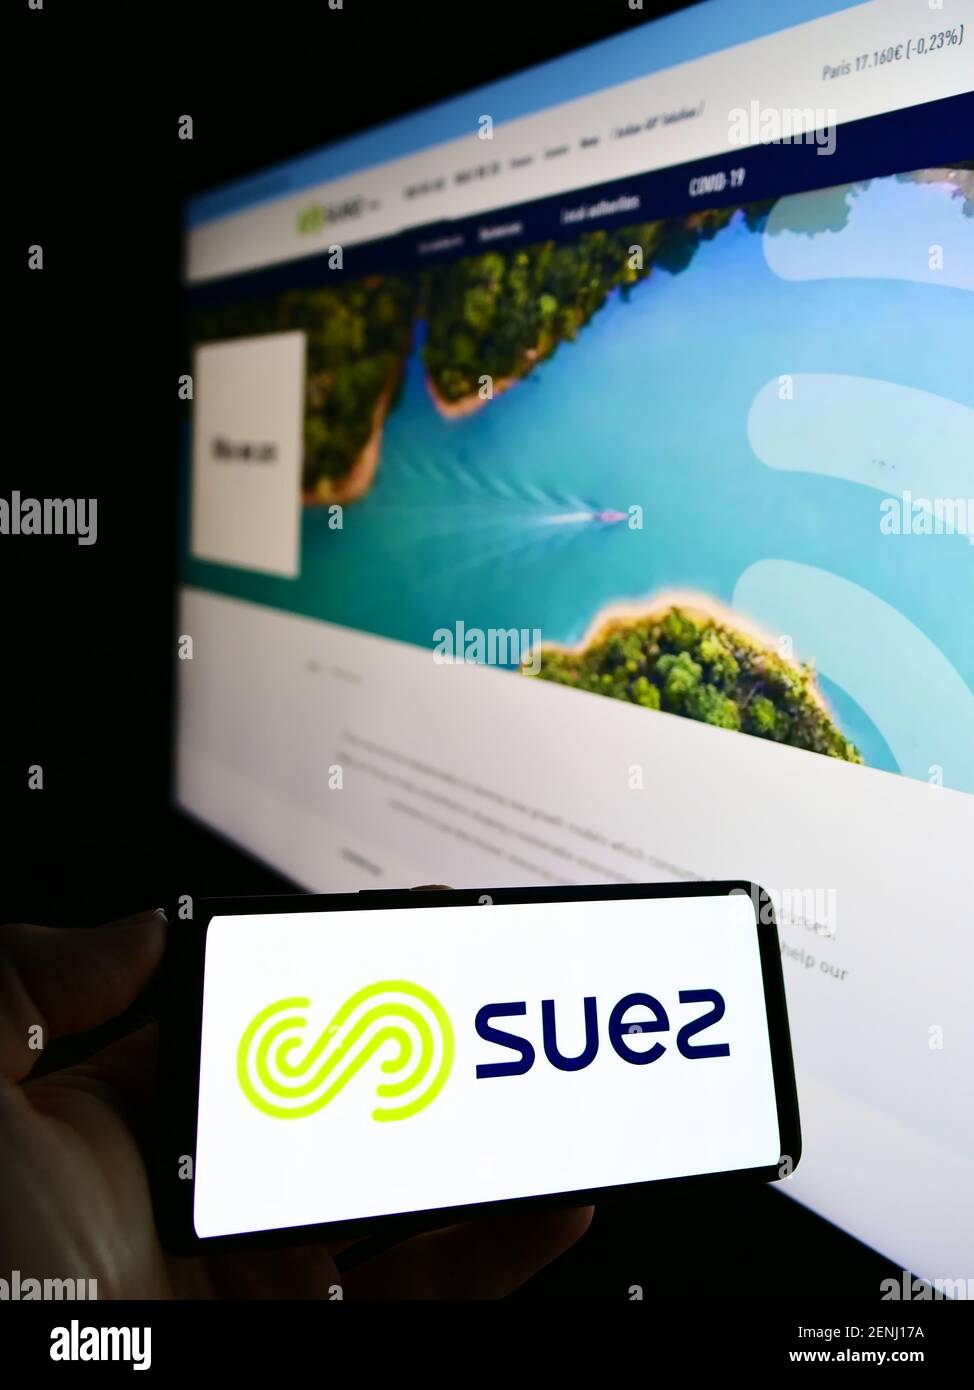 Personne tenant un téléphone portable avec le logo de l'entreprise de services publics française Suez S.A. à l'écran en face de la page web. Concentrez-vous sur l'affichage du téléphone portable. Banque D'Images